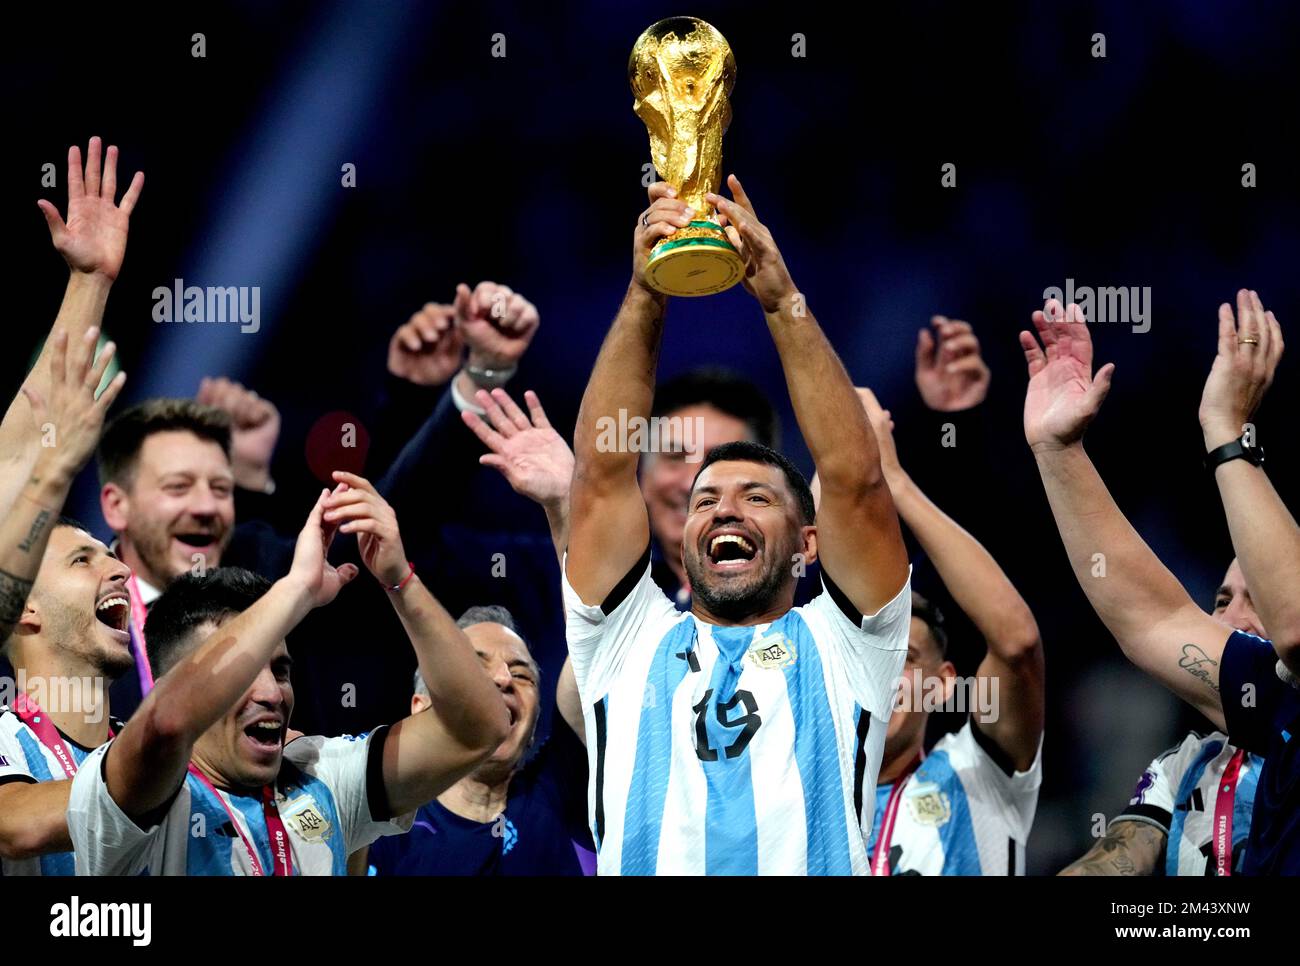 L'ex giocatore argentino Sergio Aguero festeggia con il trofeo della Coppa del mondo FIFA dopo la vittoria dell'Argentina nella finale della Coppa del mondo FIFA allo stadio di Lusail, Qatar. Data immagine: Domenica 18 dicembre 2022. Foto Stock